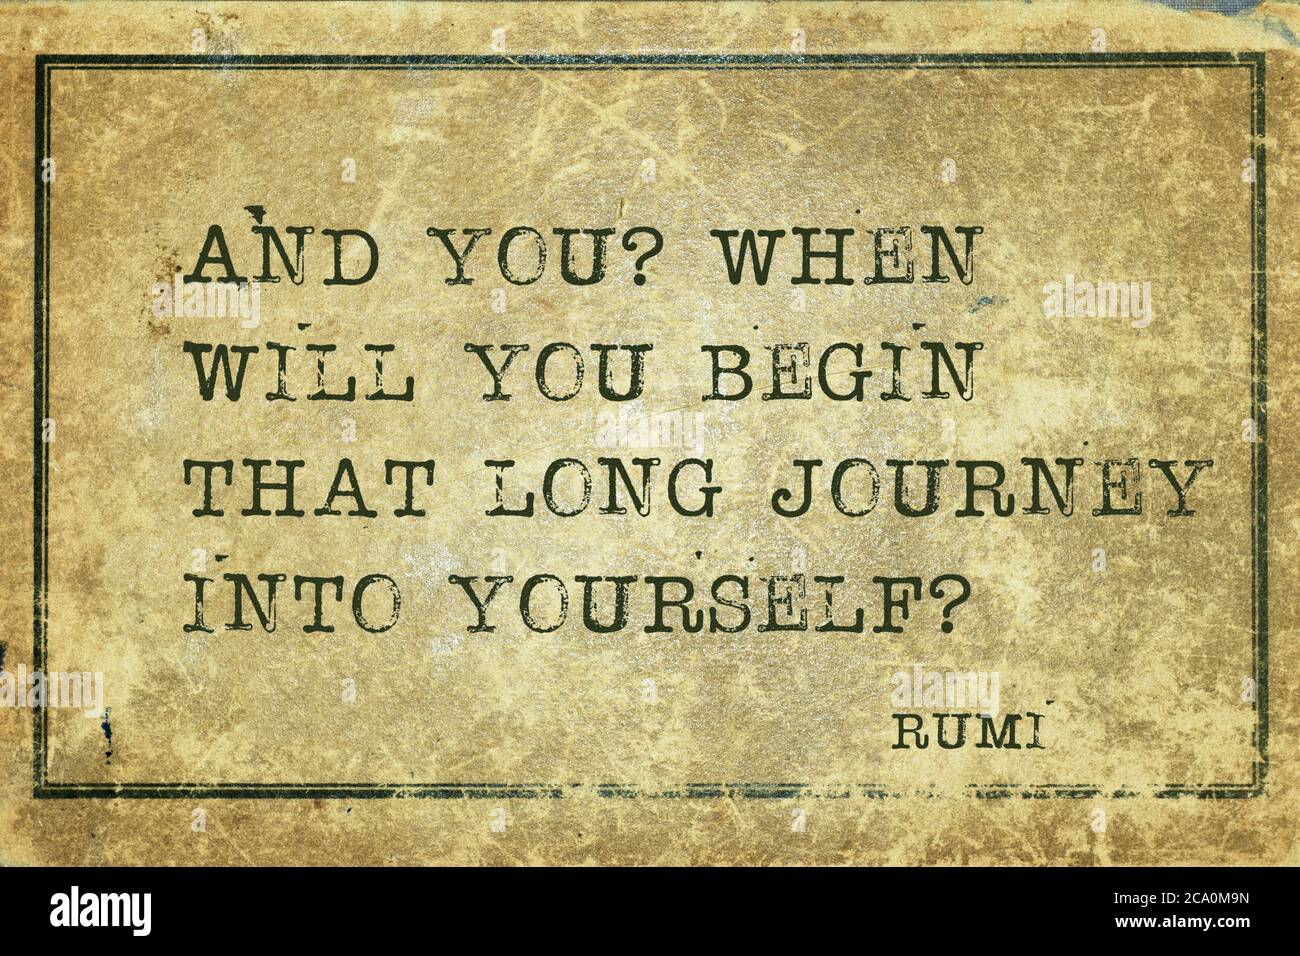 Quando inizierete quel lungo viaggio in voi stessi? - antico poeta persiano e filosofo Rumi citazione stampata su cartone d'epoca grunge Foto Stock